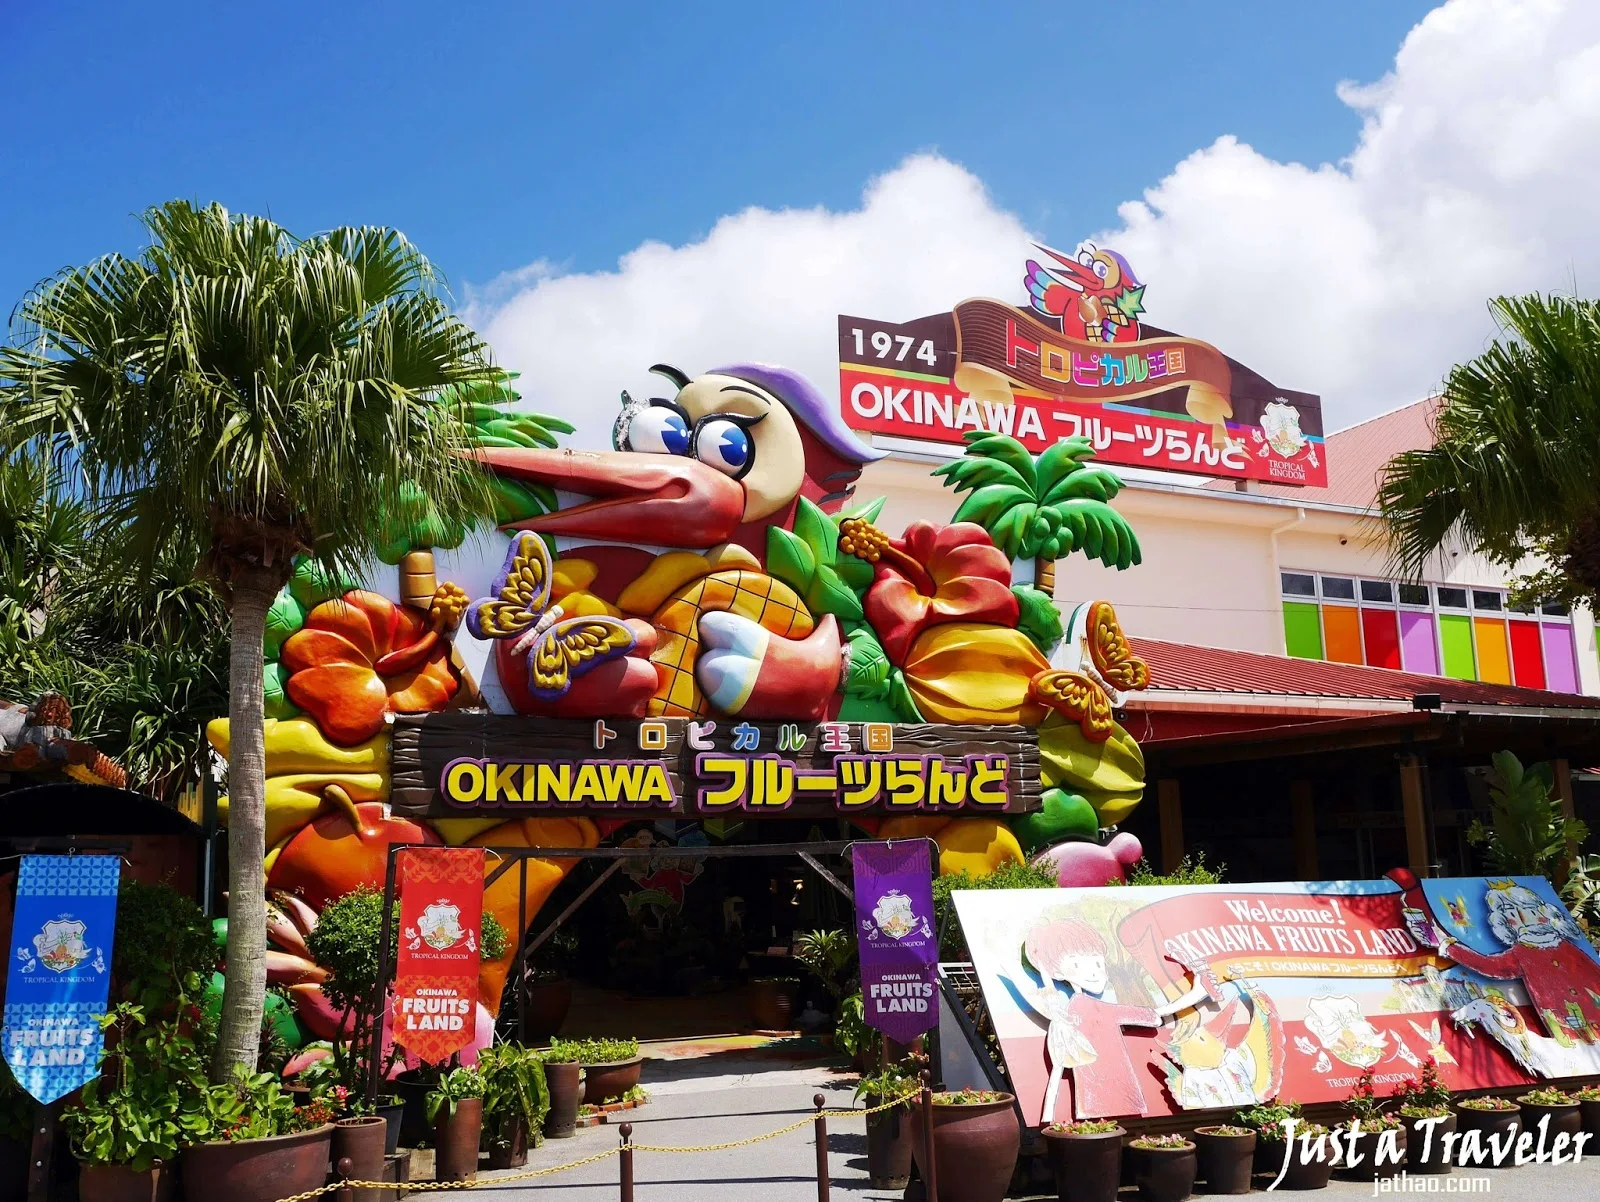 日本-沖繩-自由行-沖繩景點-推薦-水果樂園-名護-沖繩北部景點-沖繩旅遊-沖繩觀光-沖繩行程-Okinawa-attraction-Fruitland-Nago-Toruist-destination